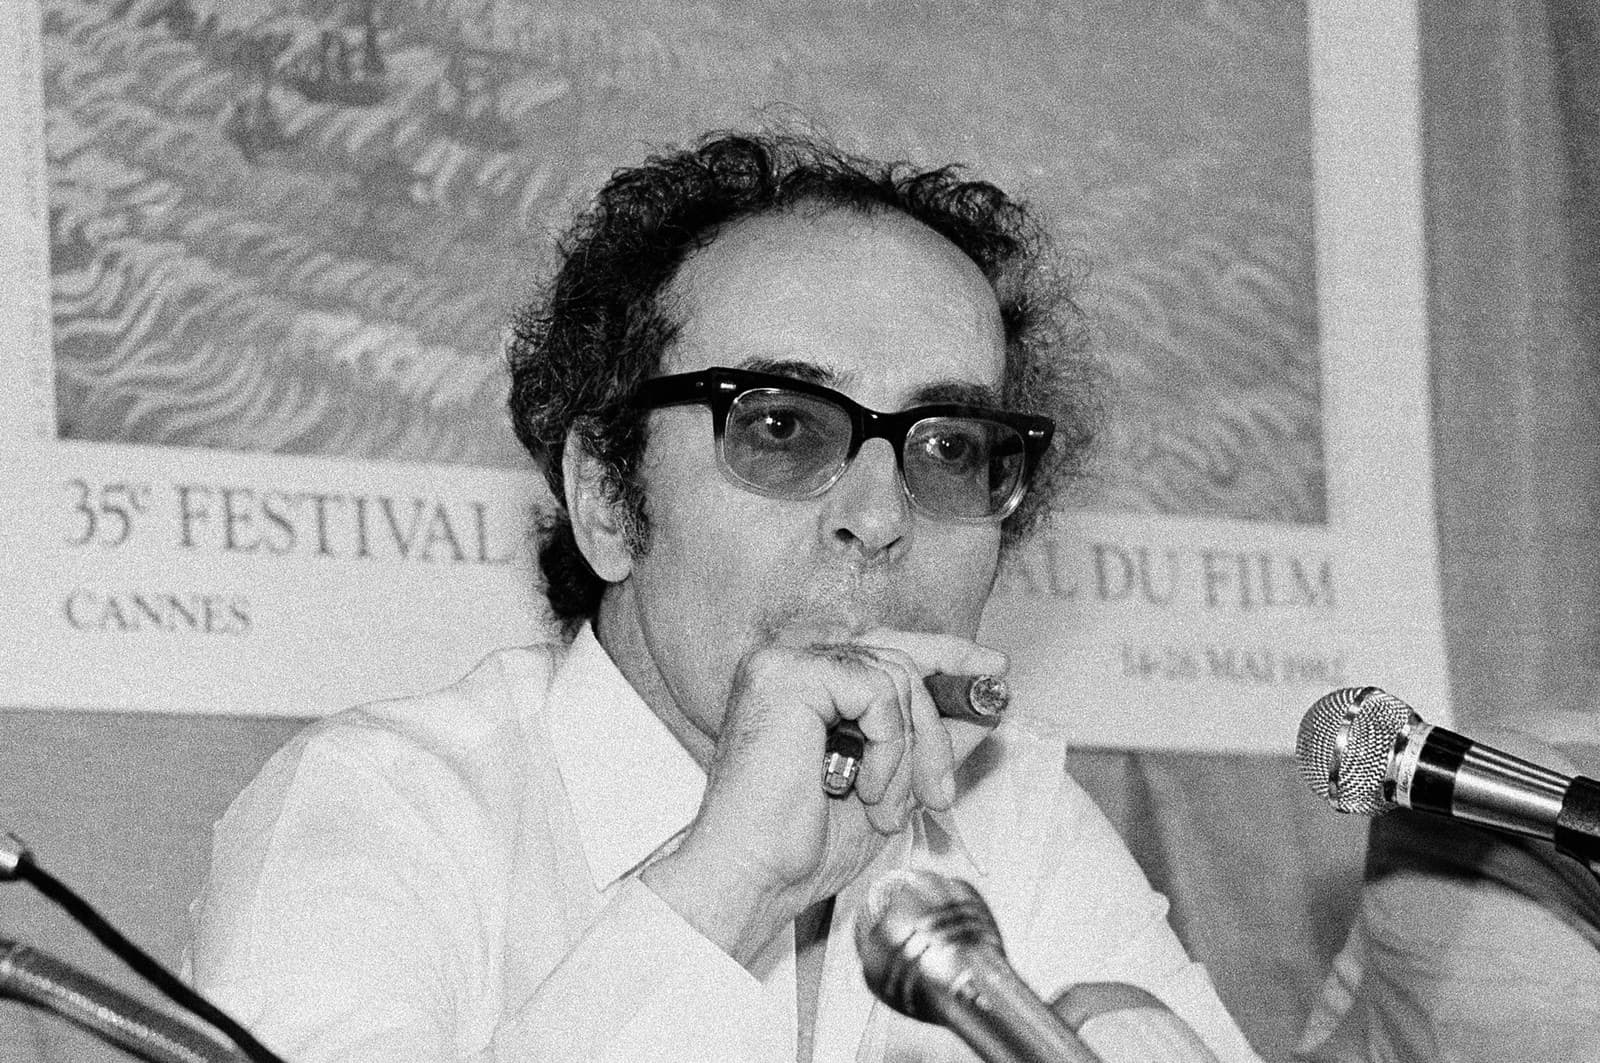 Zomrel legendárny francúzsky filmár